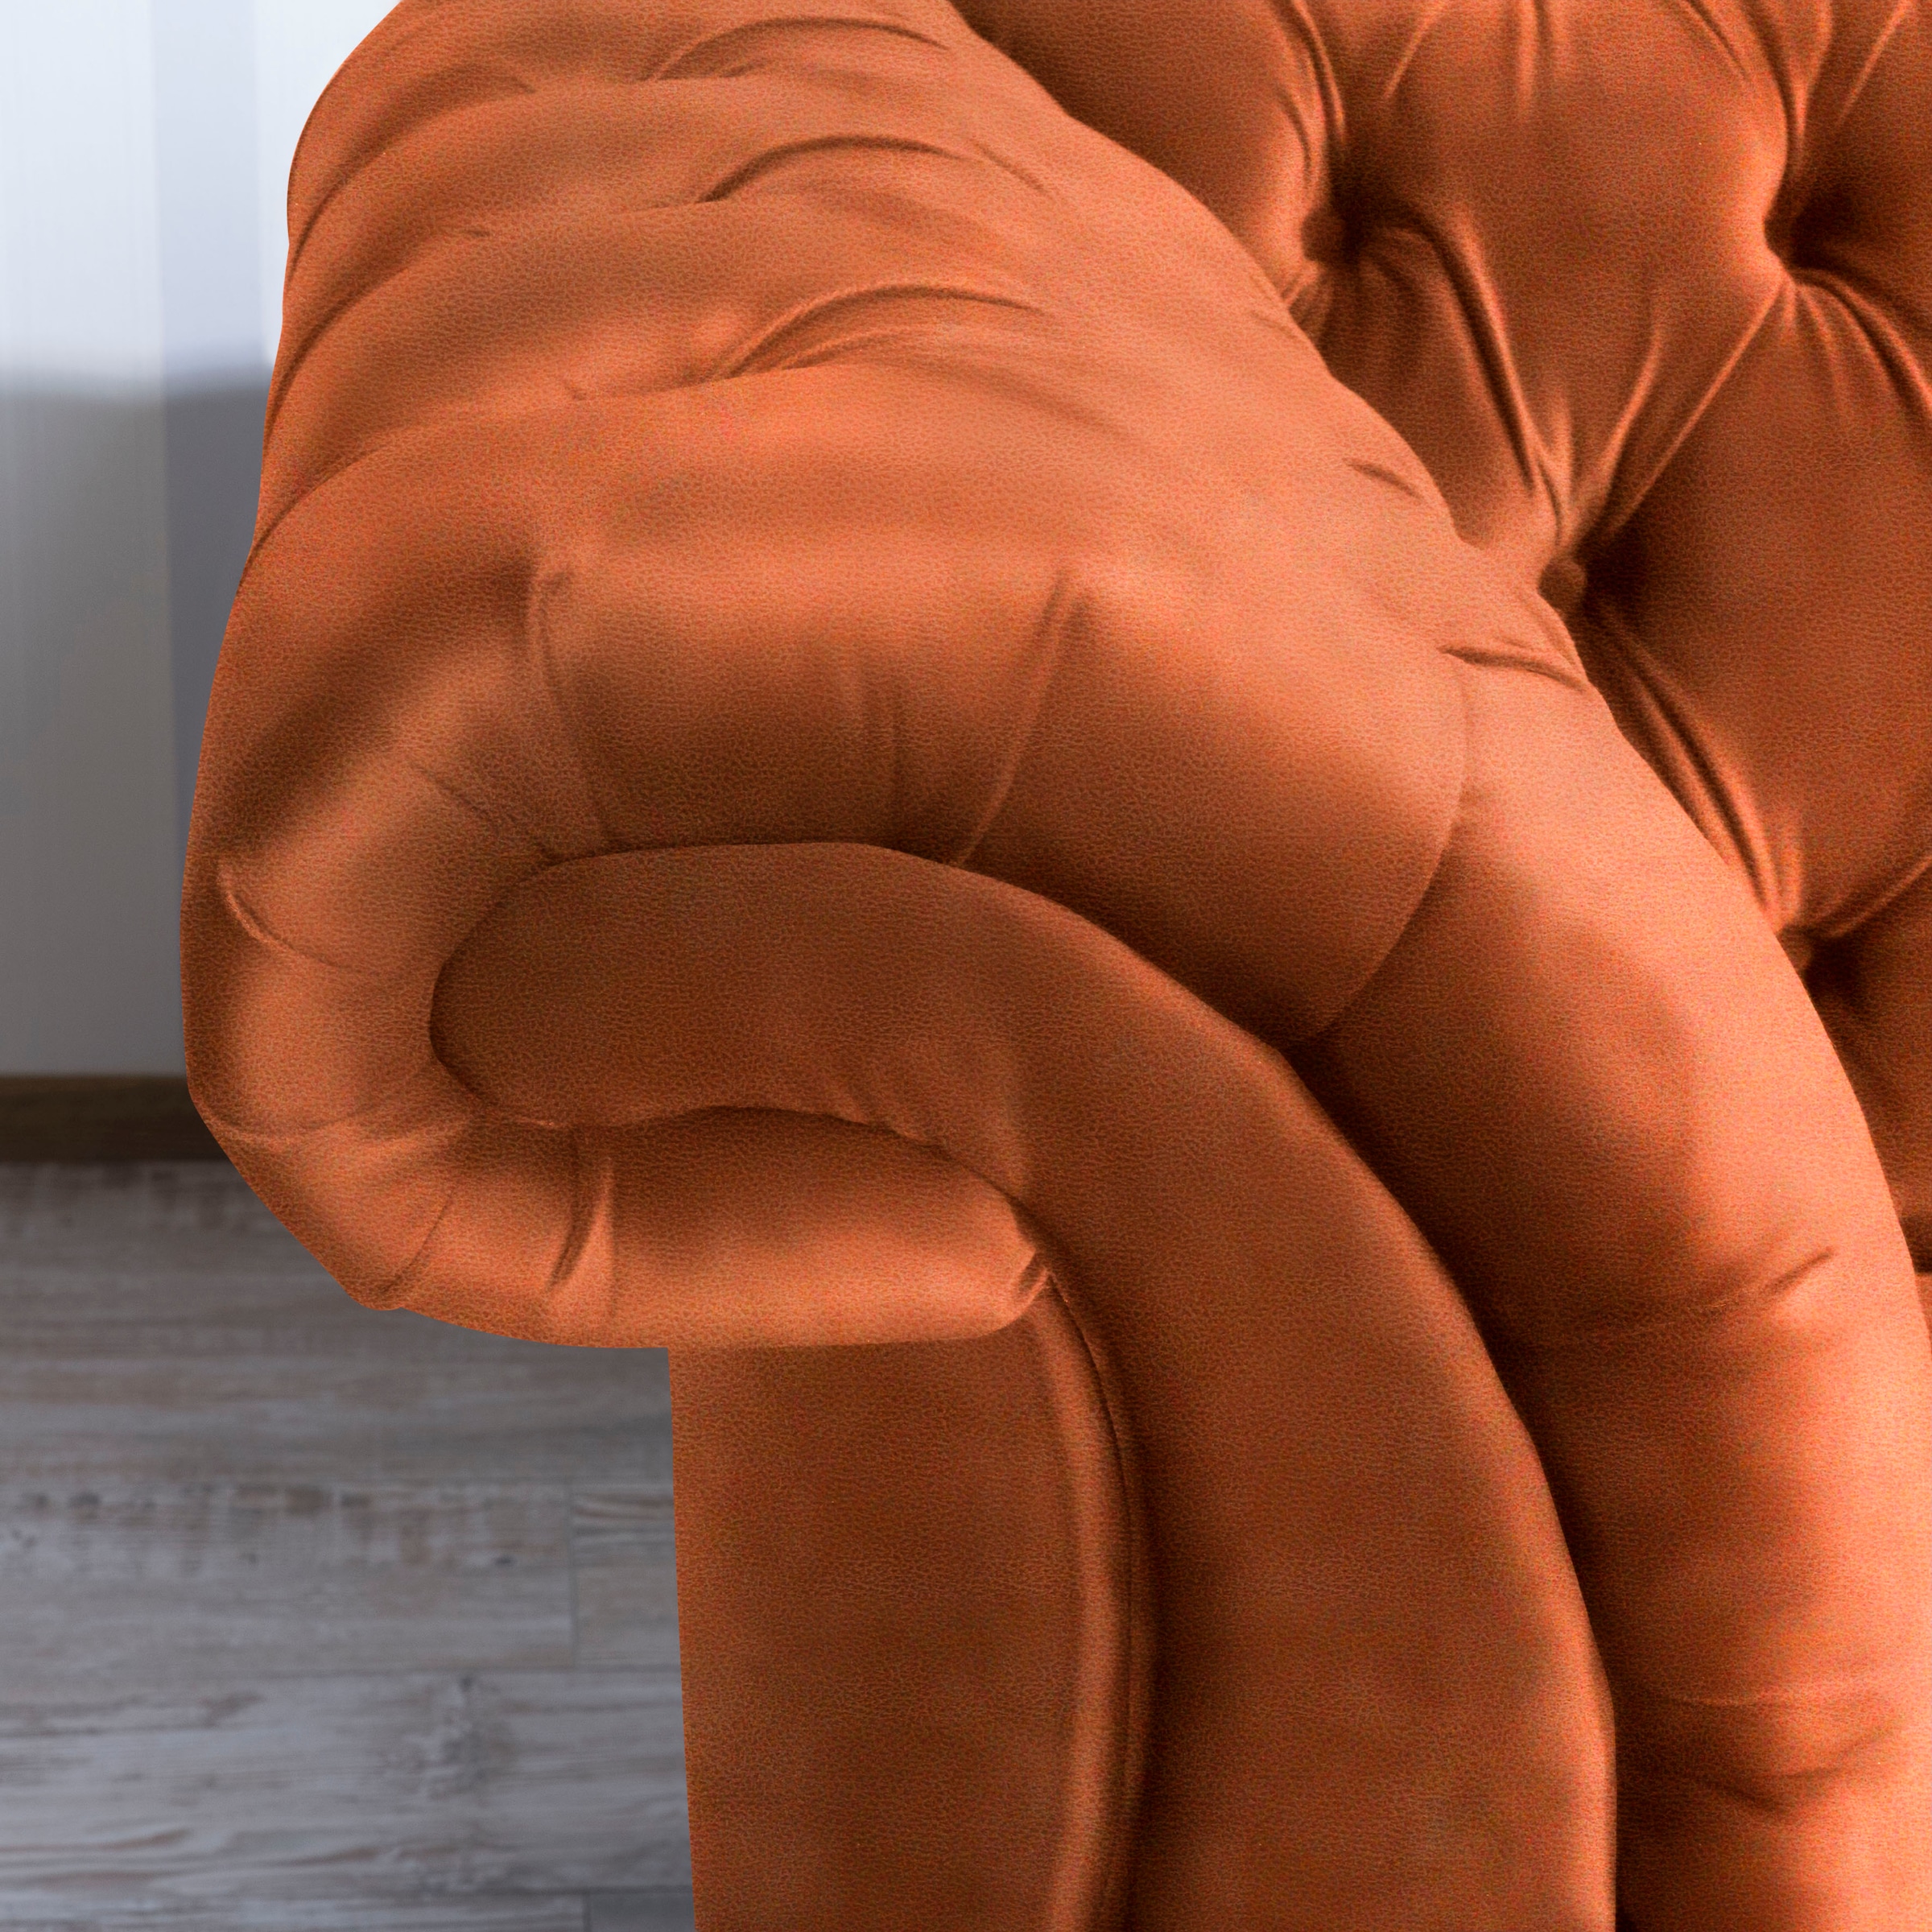 Max Winzer® Chesterfield-Sofa »Isabelle«, Knopfheftung & gedrechselten Füßen in Buche Nussbaum, Breite 200 cm